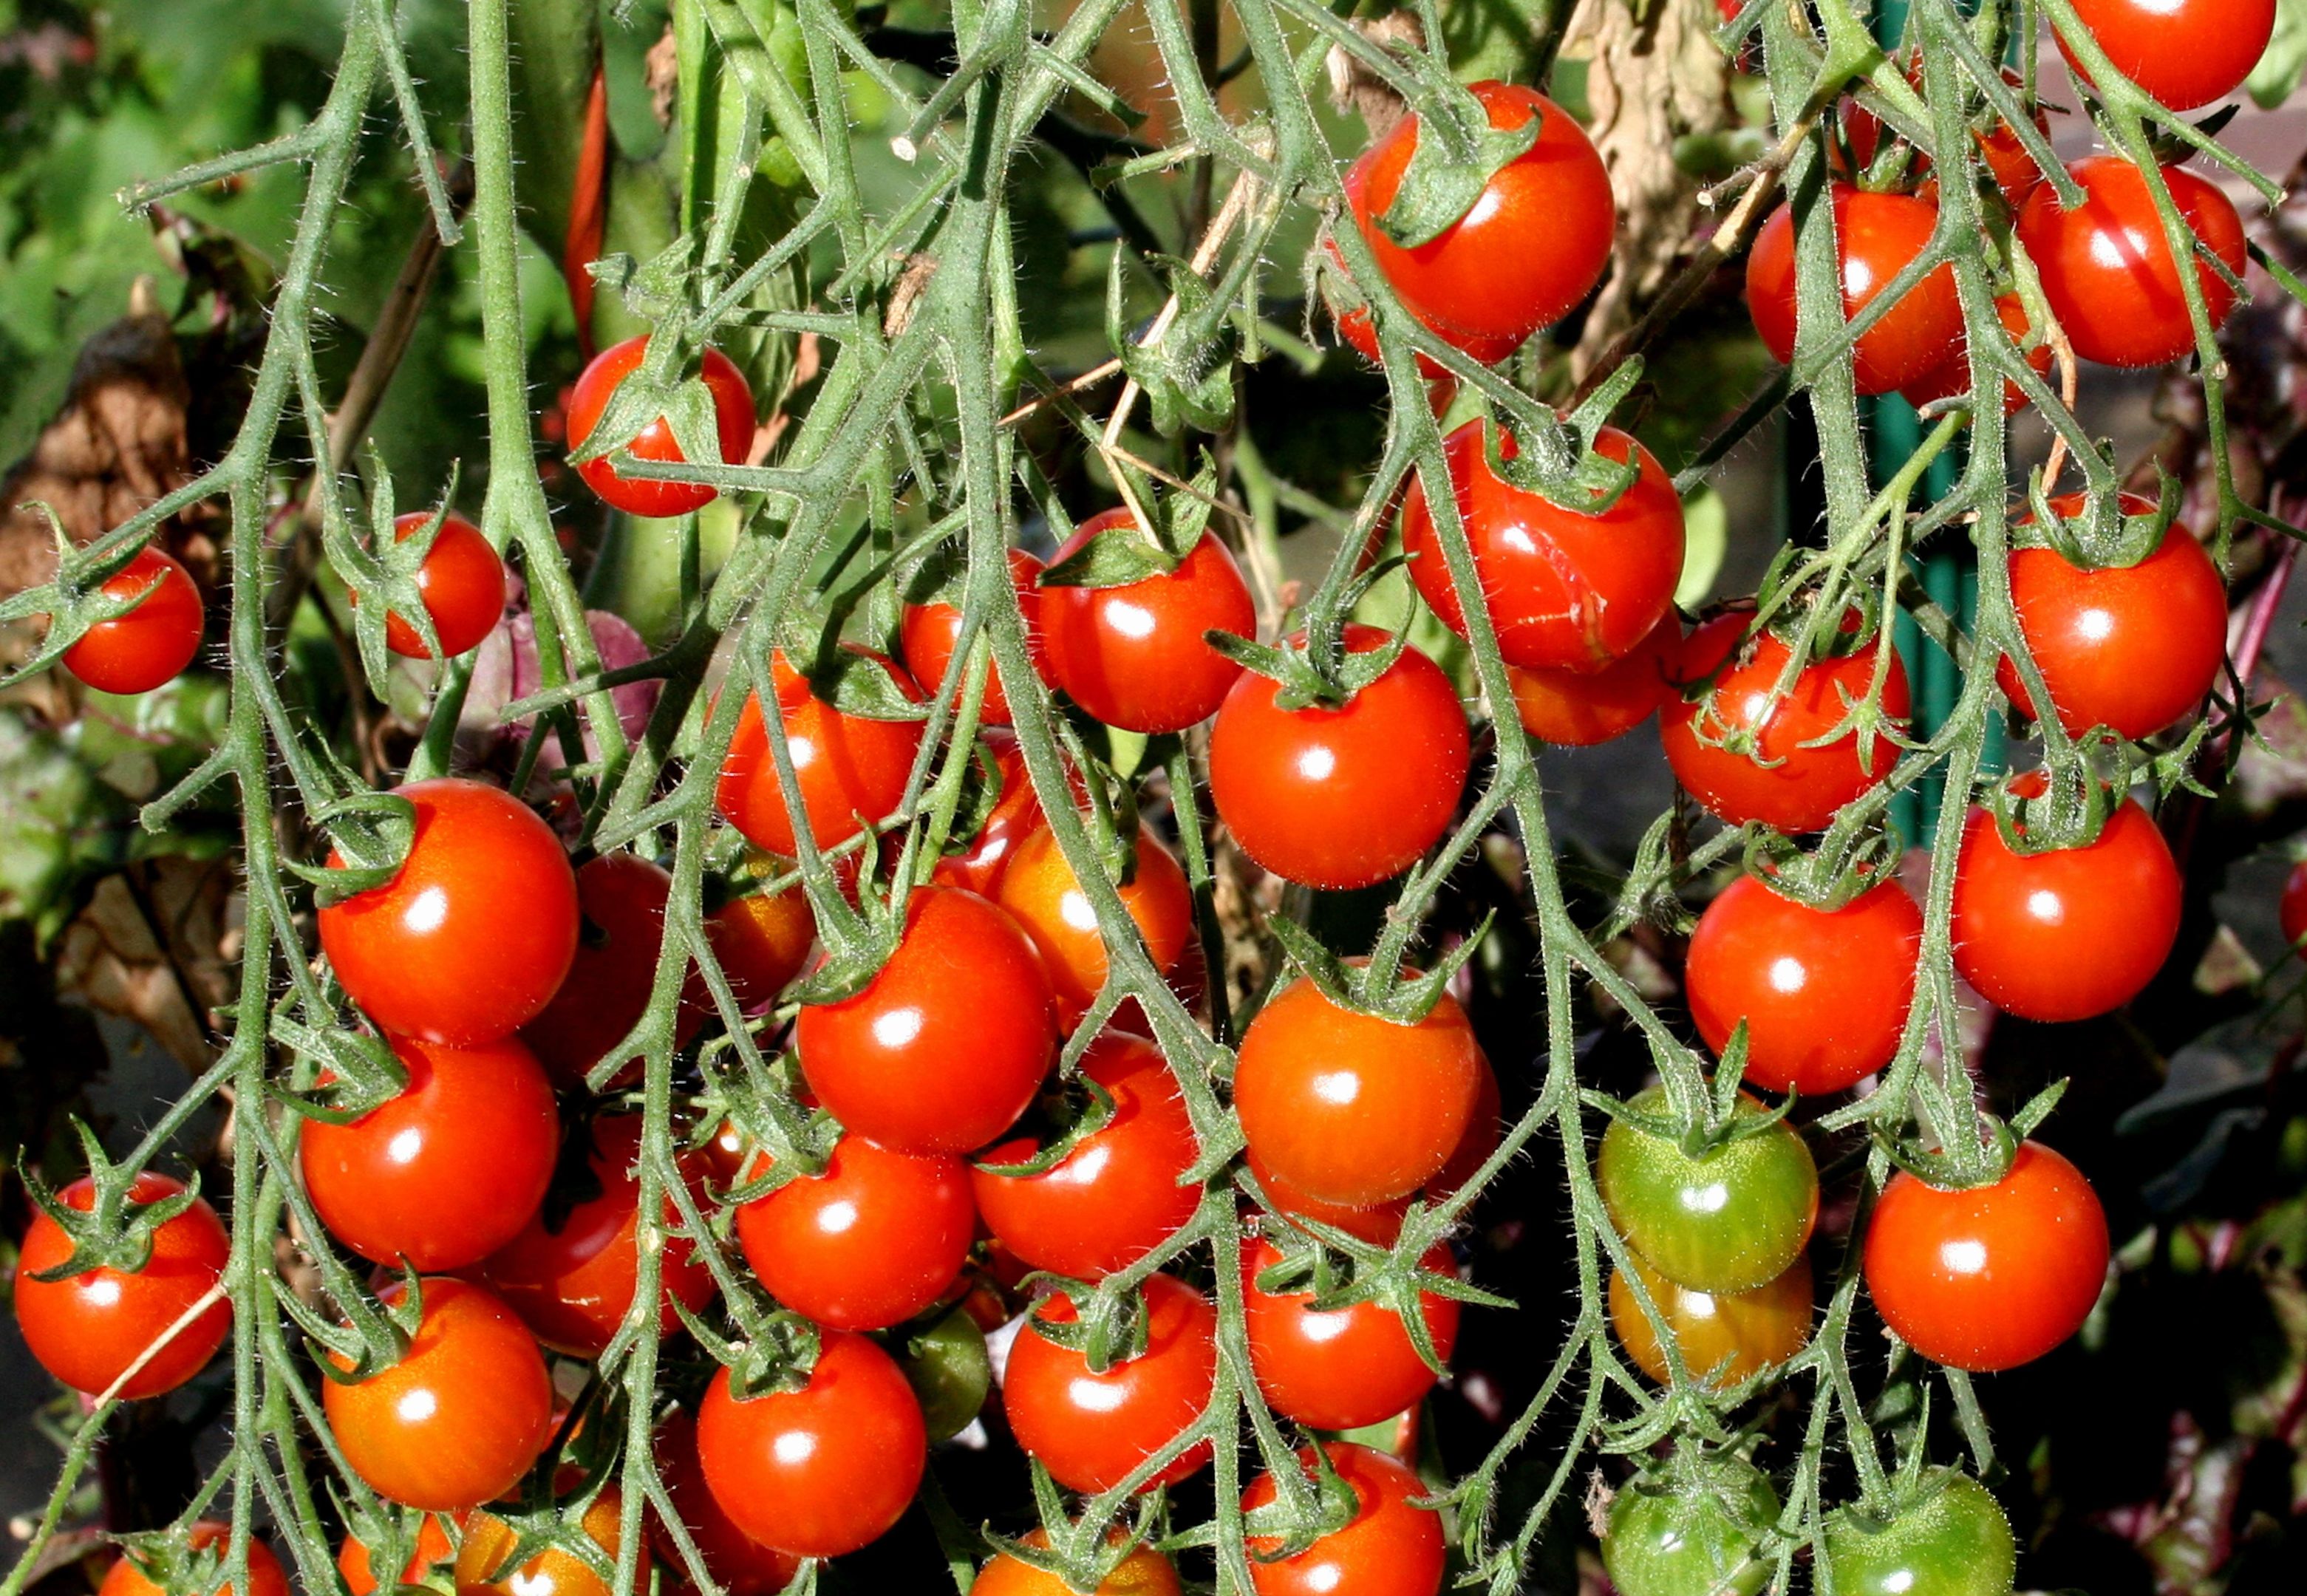 Cherry tomatoes ripening